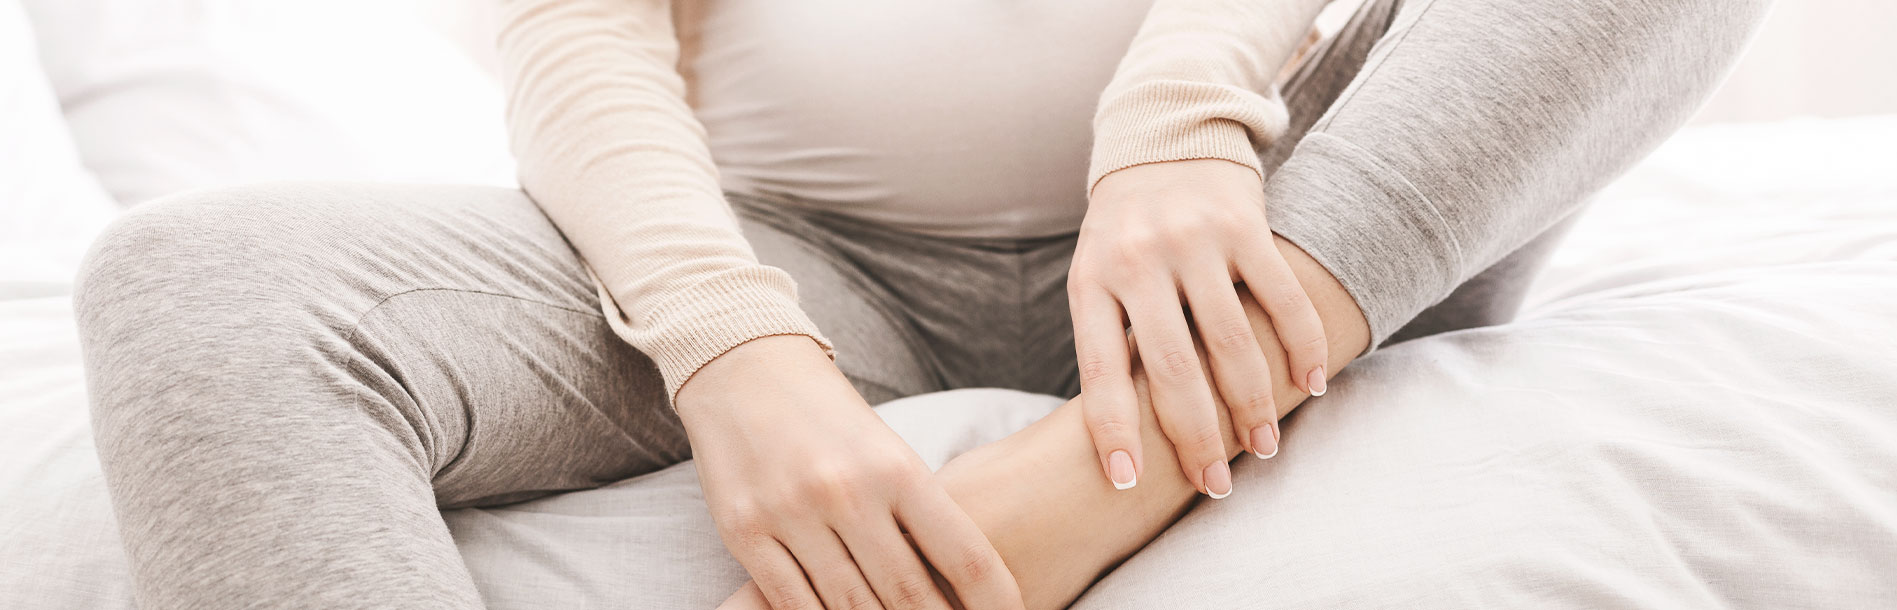 10 dicas para aliviar o inchaço na gravidez